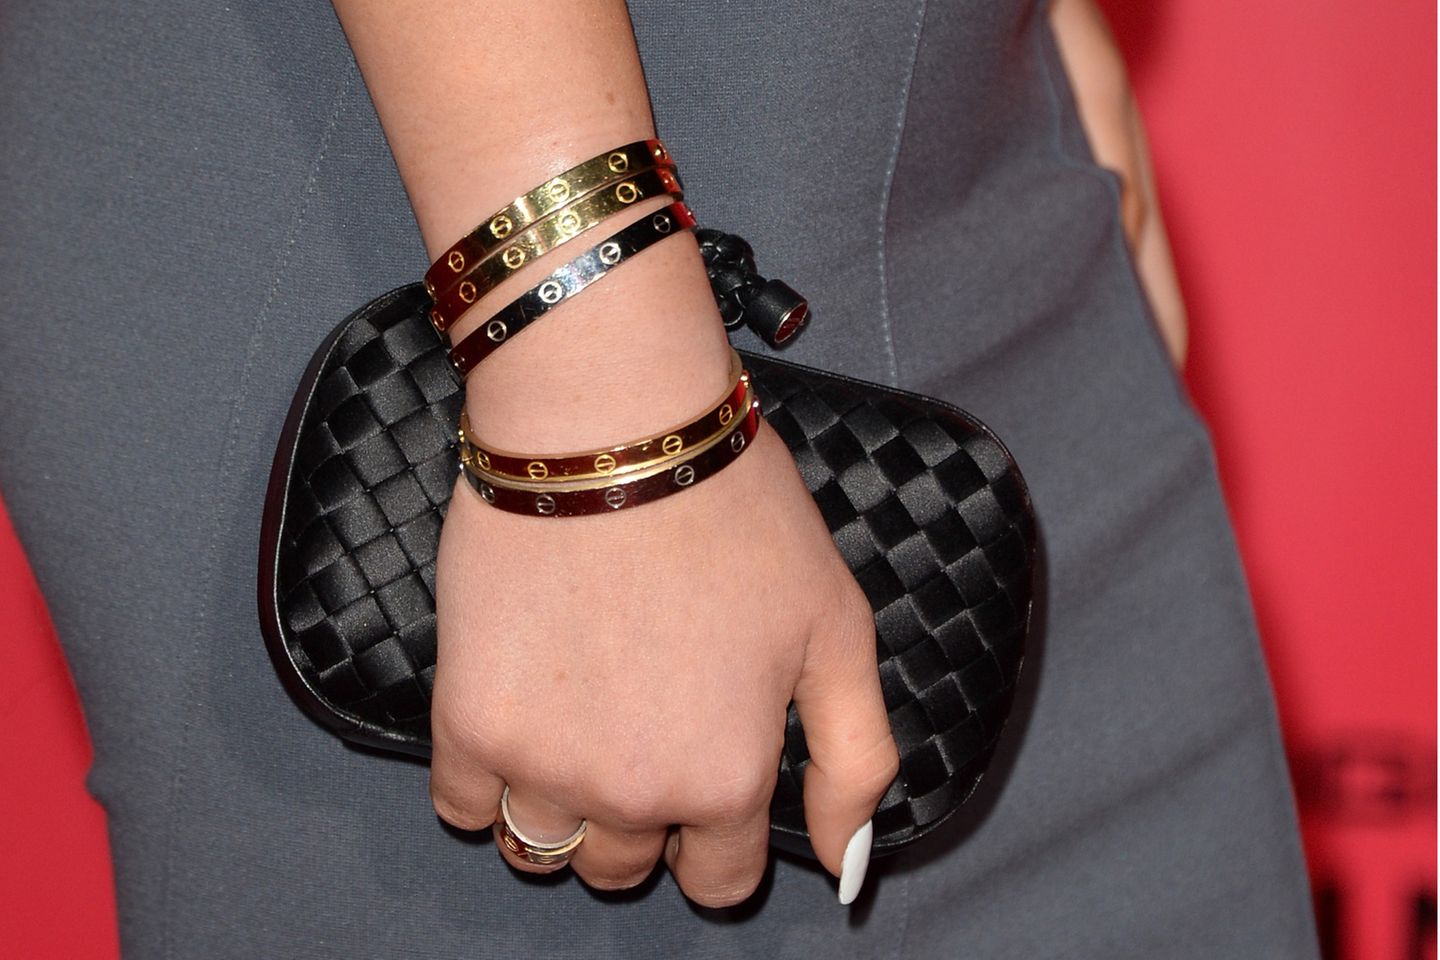 US-Superstar Kylie Jenner trägt am liebsten gleichzeitig mehrere Love Bracelets in unterschiedlichen Goldtönen.